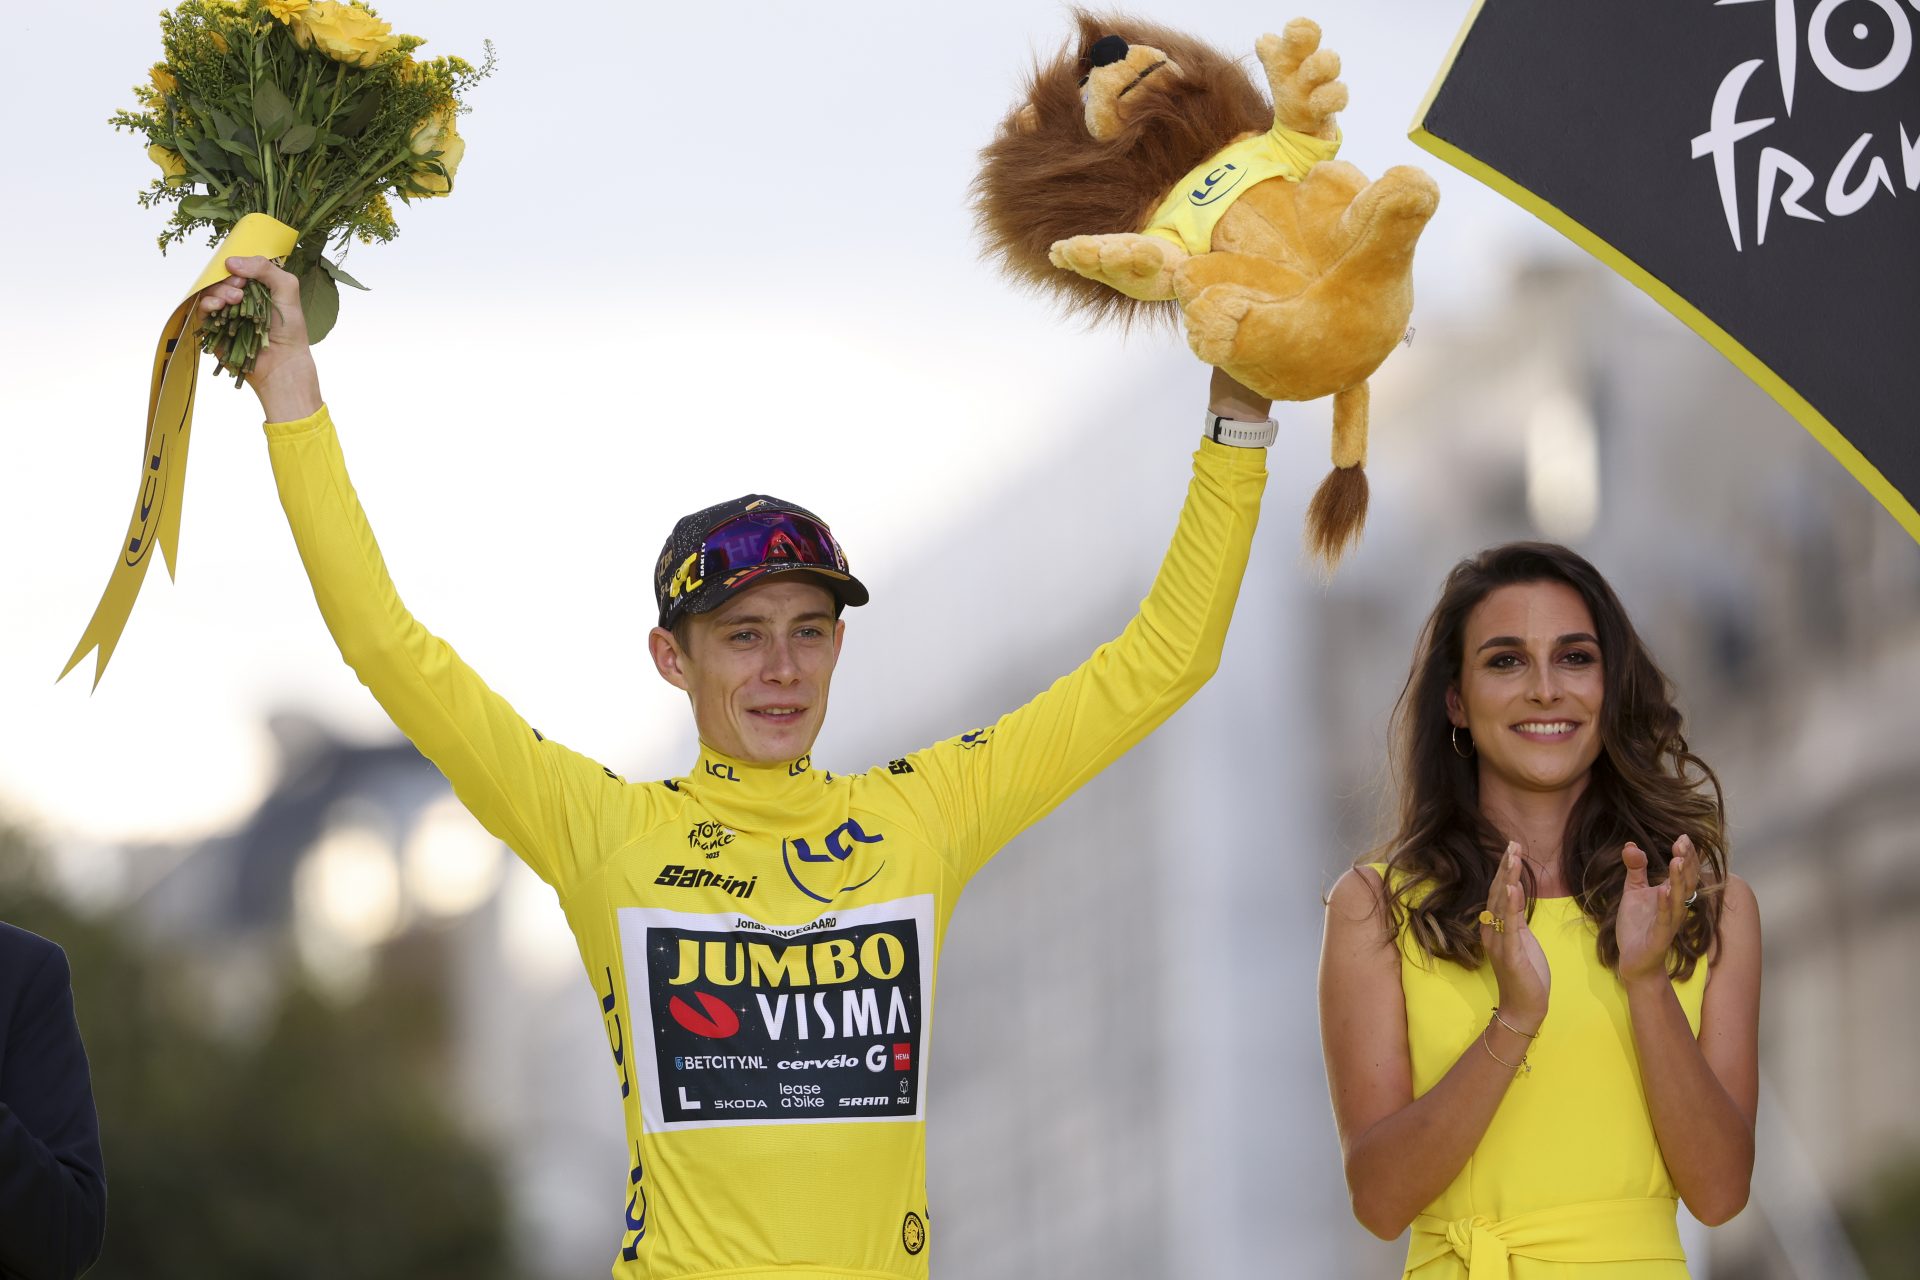 De 8 renners met meer Tour de France-zeges dan Jonas Vingegaard